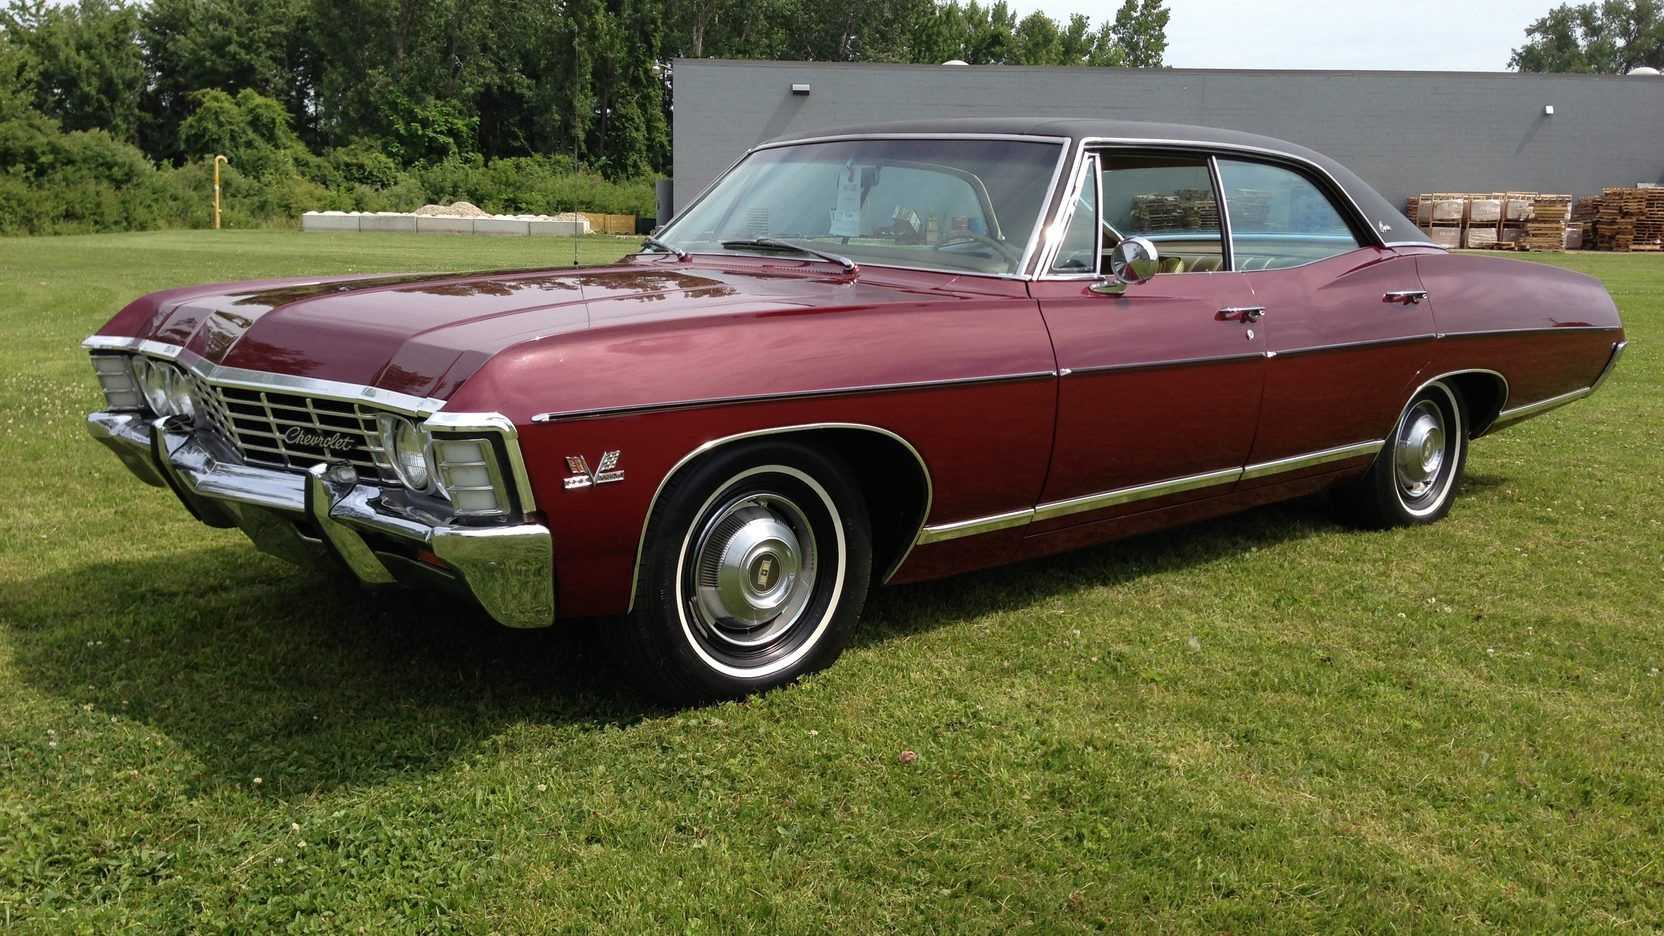 Шевроле импала 1967 года (chevrolet impala 1967): обзор и характеристики